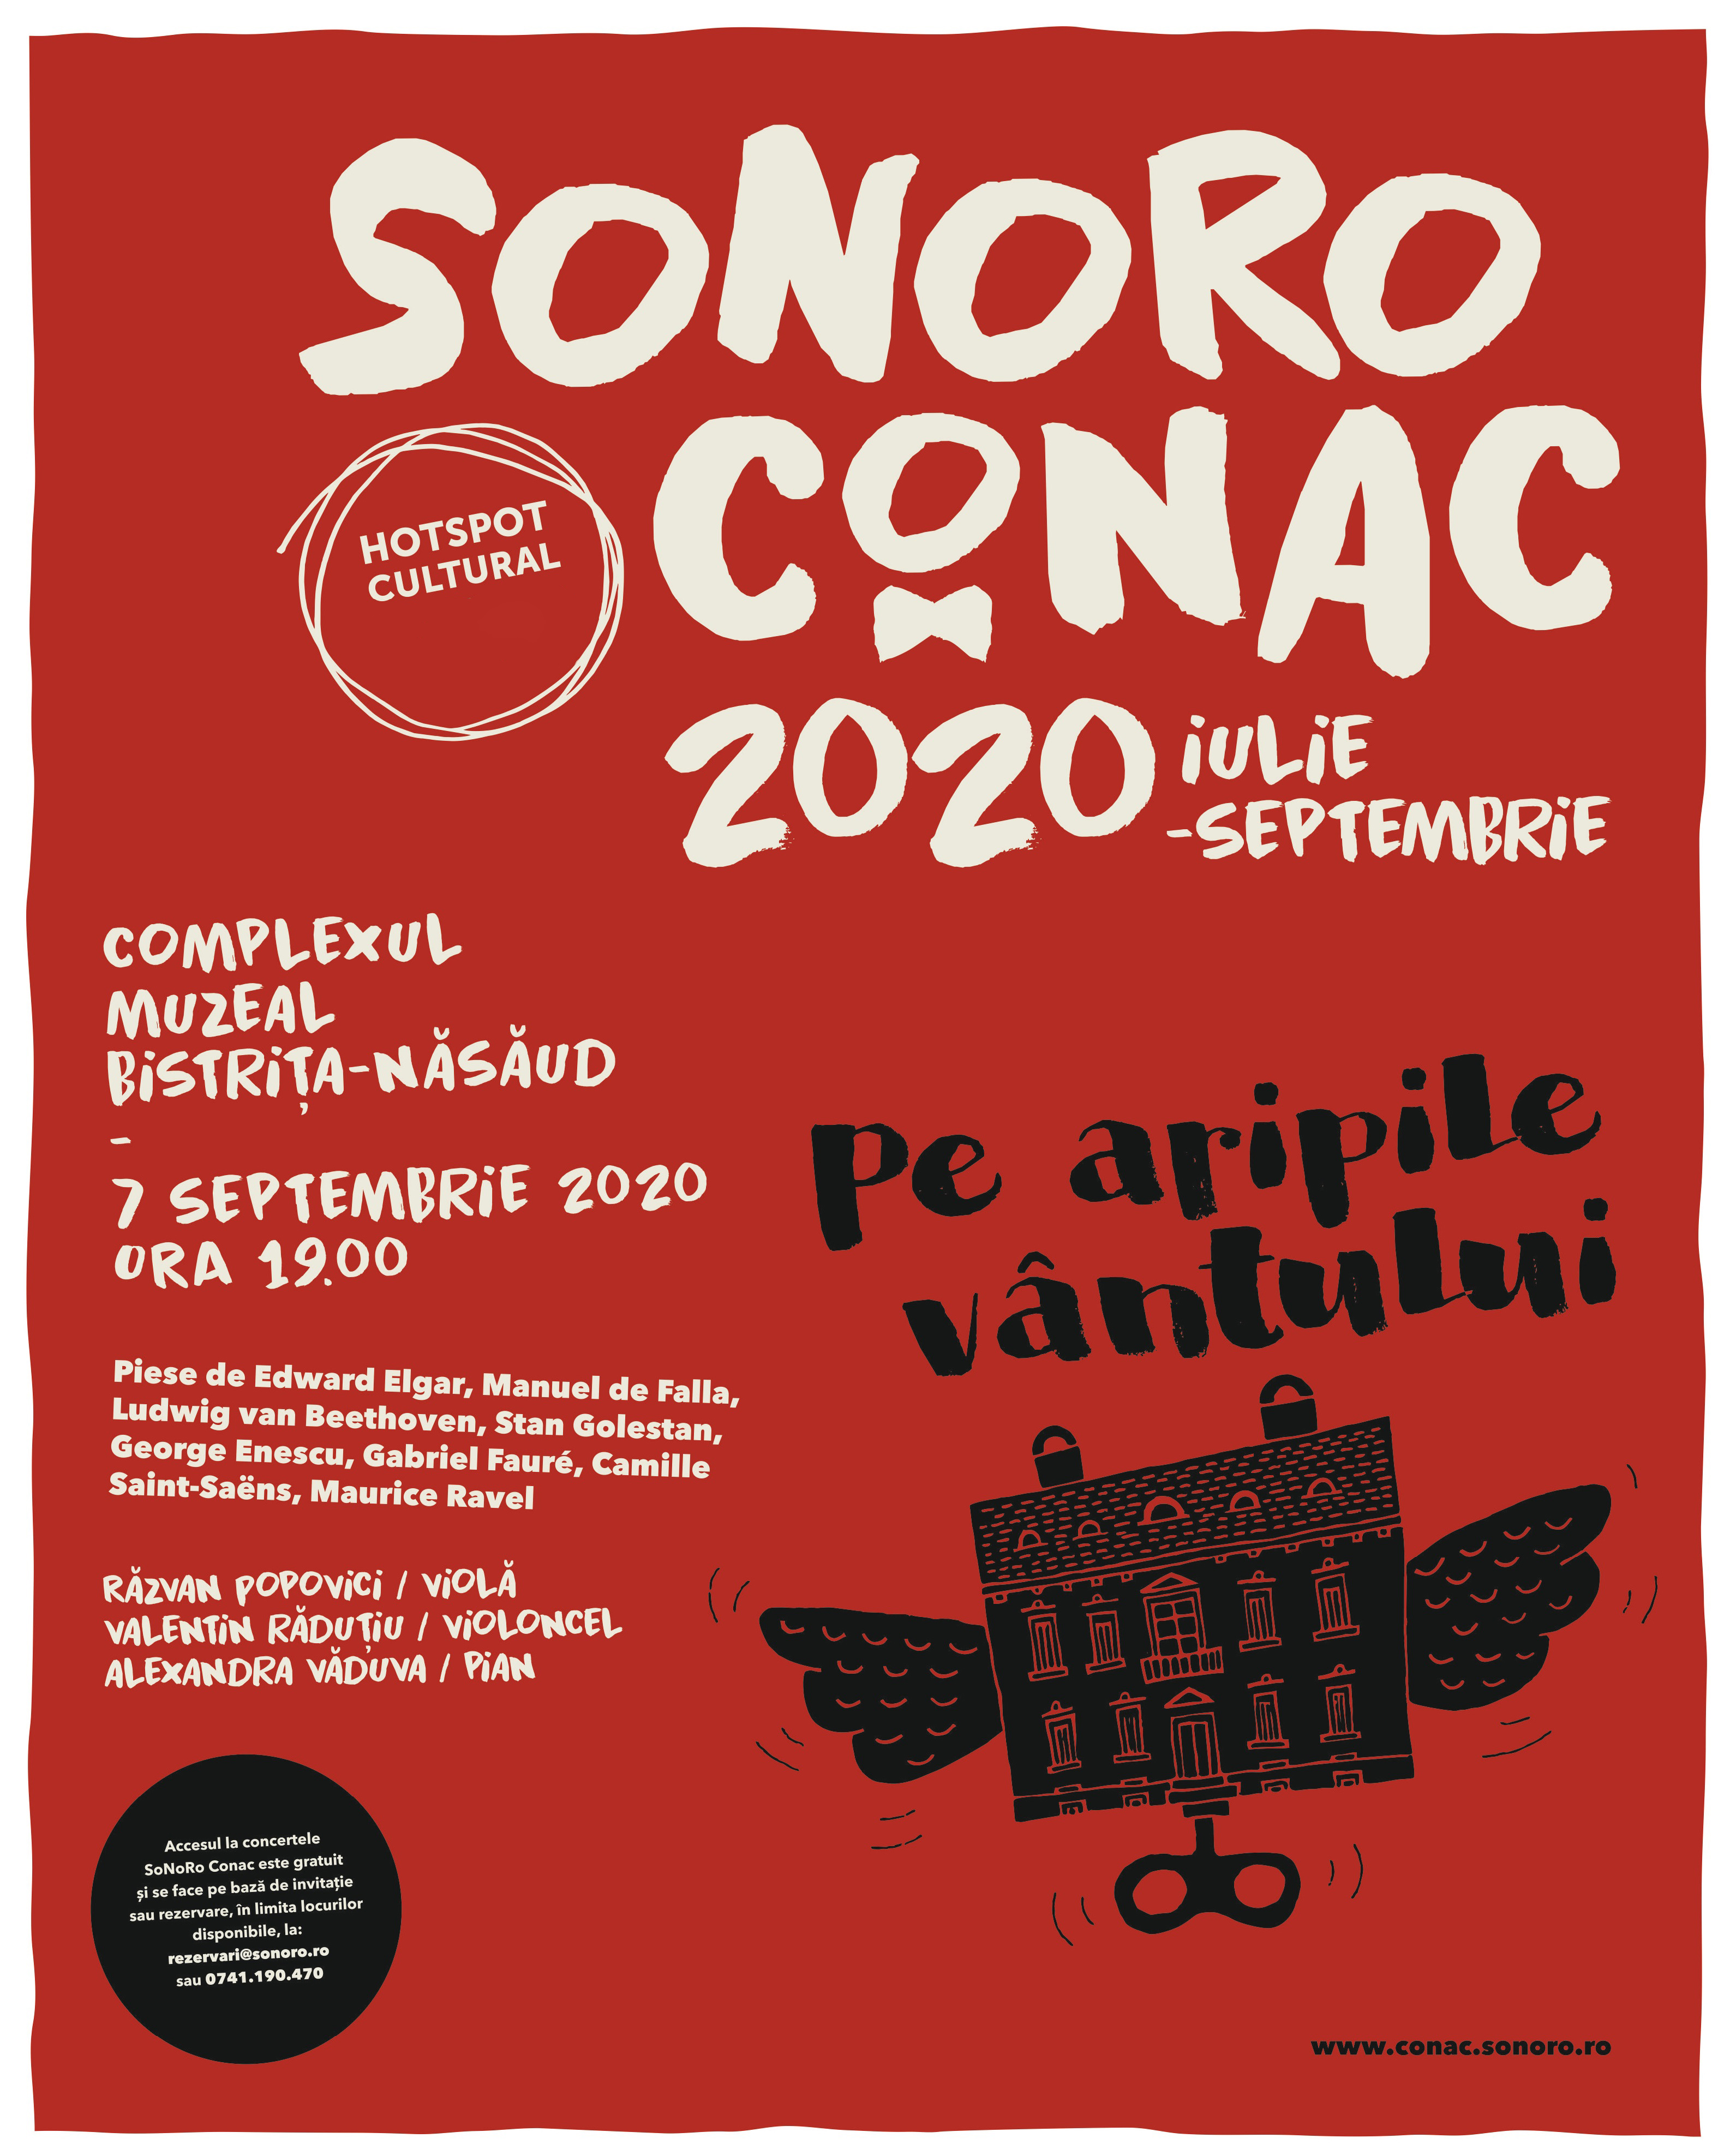 SoNoRo Conac 2020 „Pe aripile vântului” la final